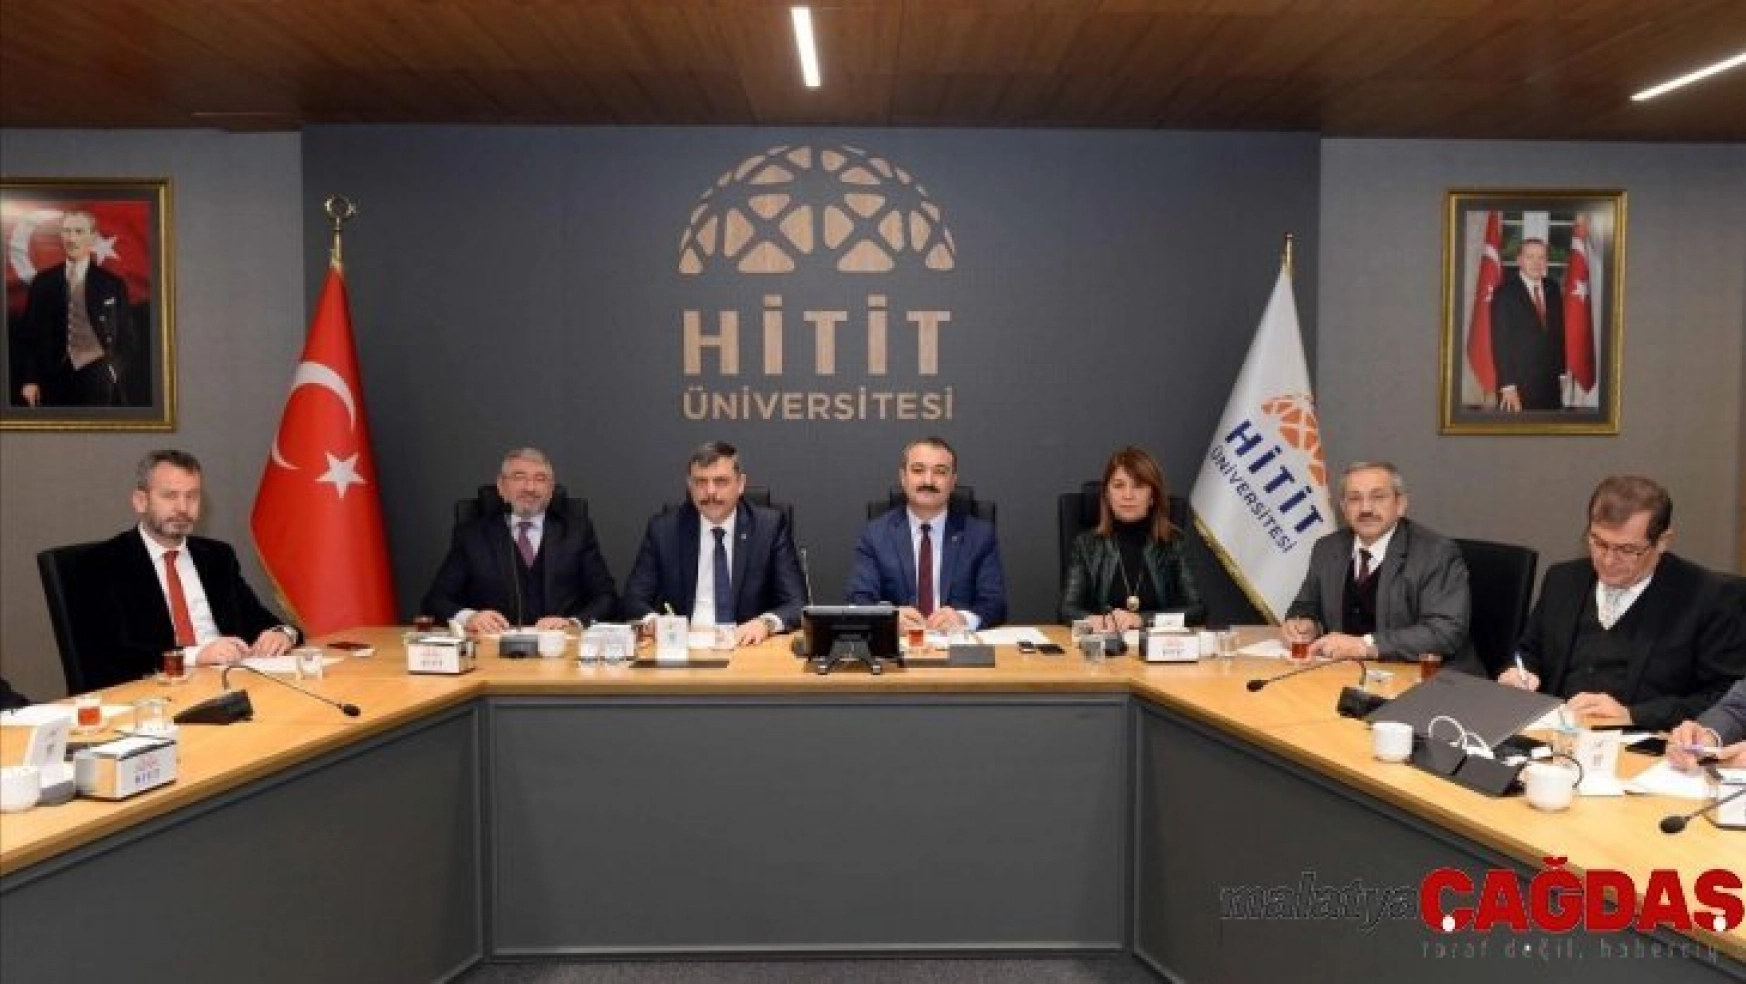 Hitit Üniversitesi stratejik planı masaya yatırıldı